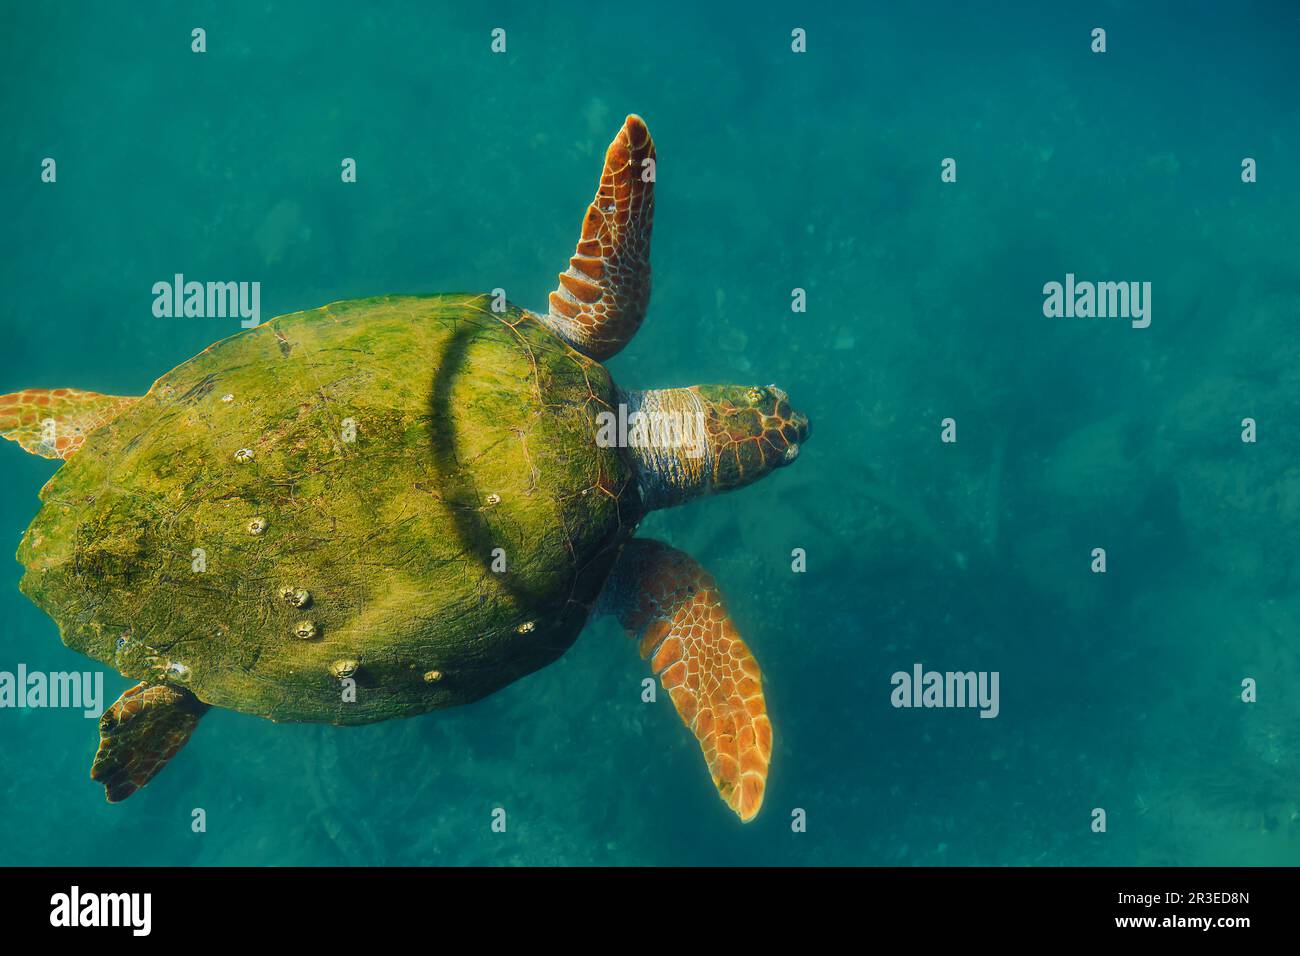 Ausgewachsene grüne Meeresschildkröte mit Muscheln, die mit Algen überwuchert sind, Tiere des mittelmeers. Schildkröte – Caretta caretta, selektiver Fokus, Draufsicht Stockfoto